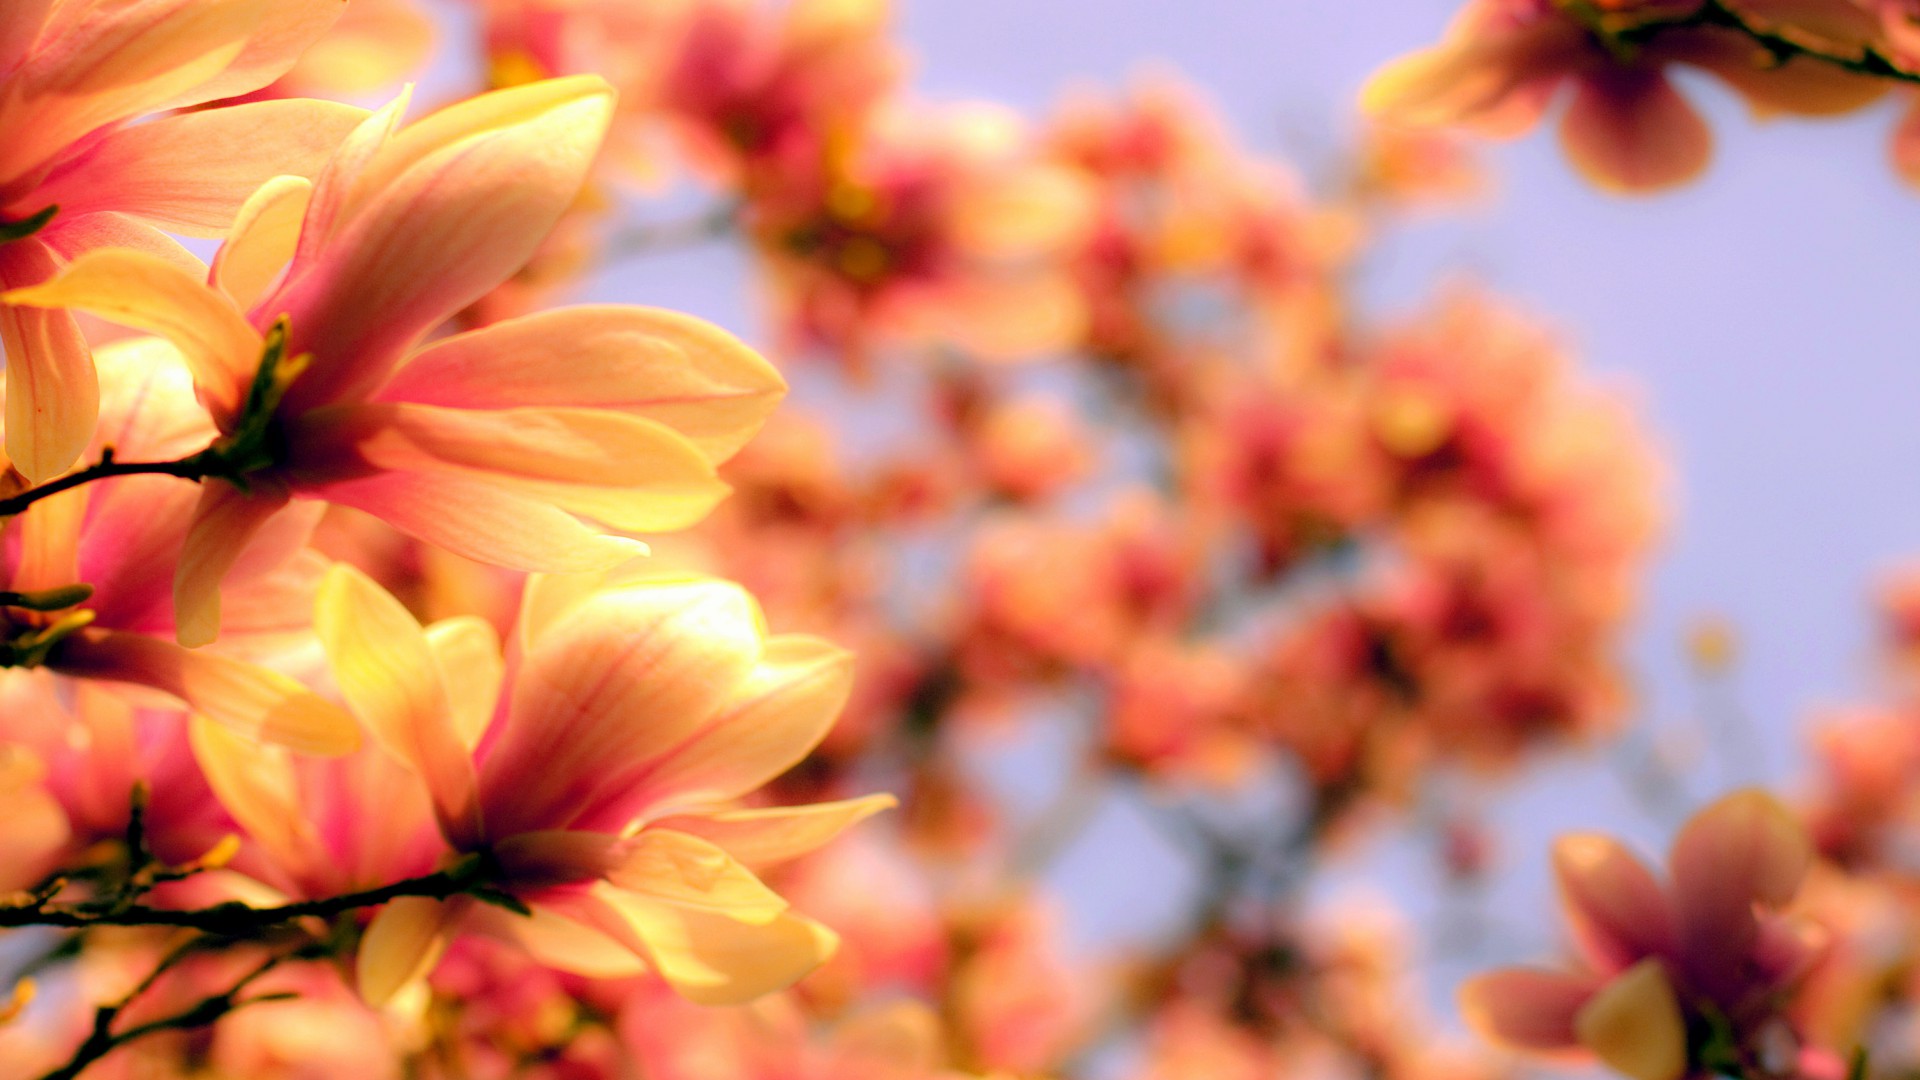 Магнолия, 4k, HD, Азия, весна, цветок, Magnolia, 4k, HD wallpaper, Asia, spring, flower (horizontal)